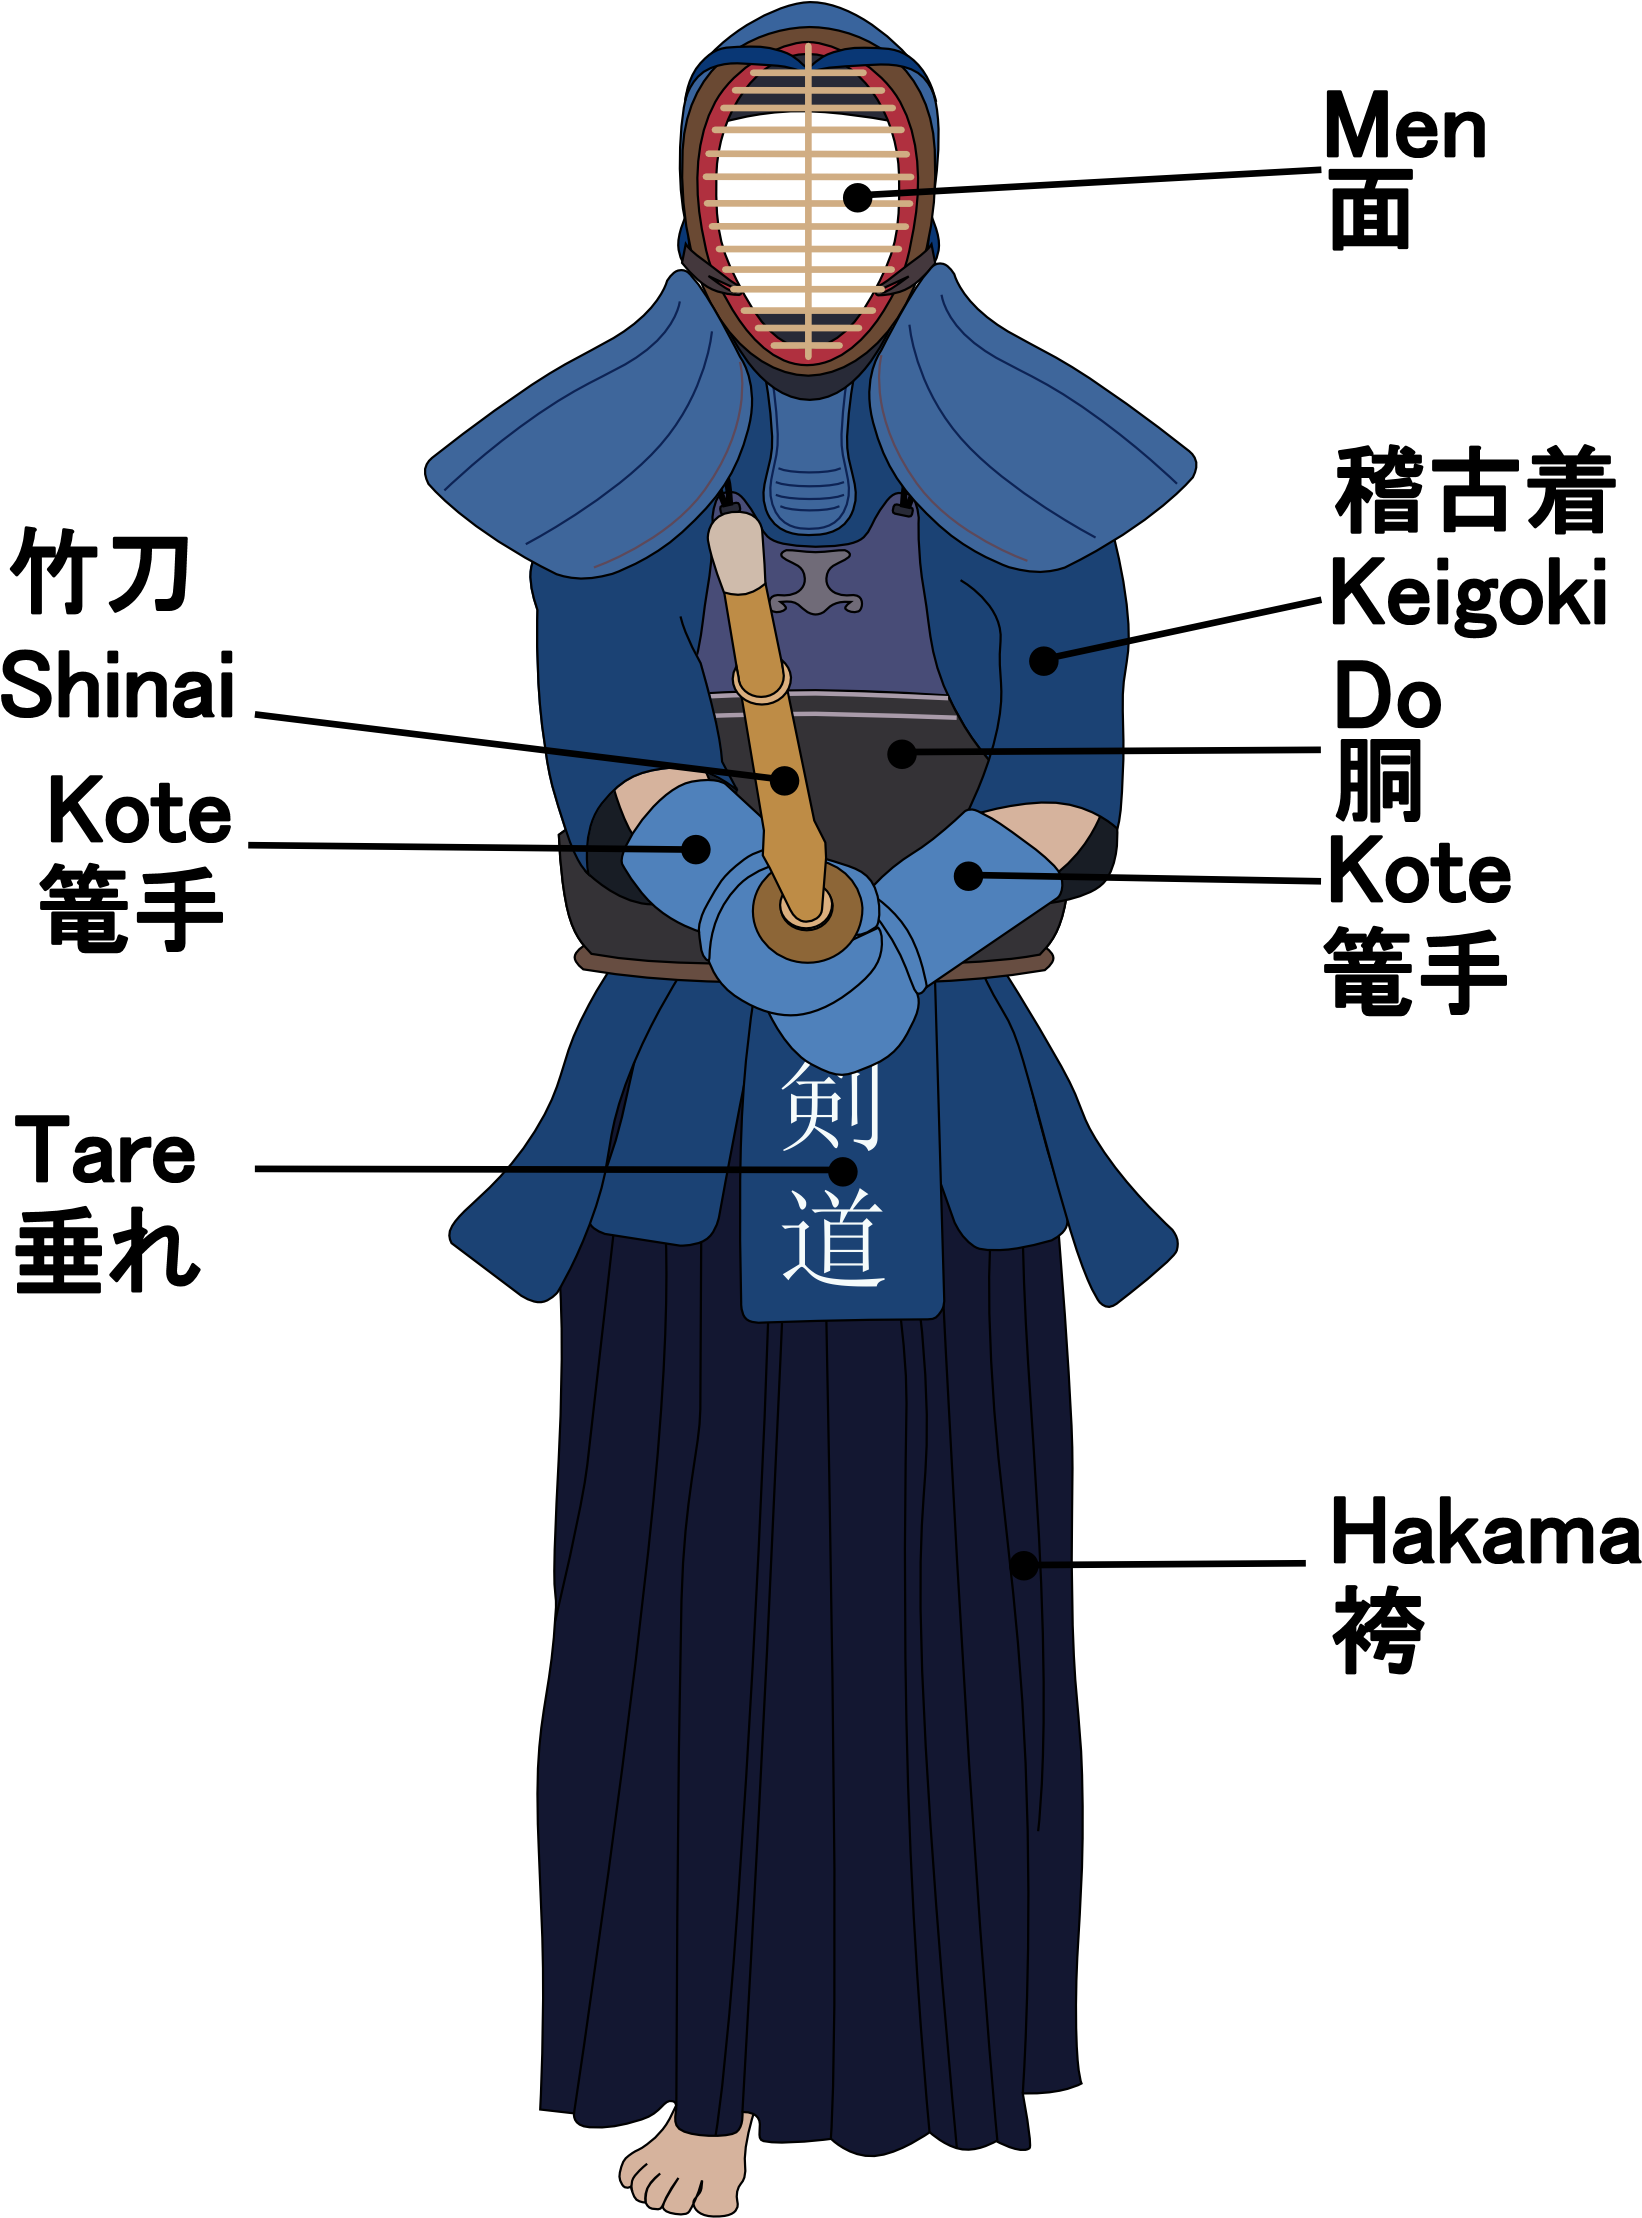 A Cartoon Of A Person In A Blue Garment